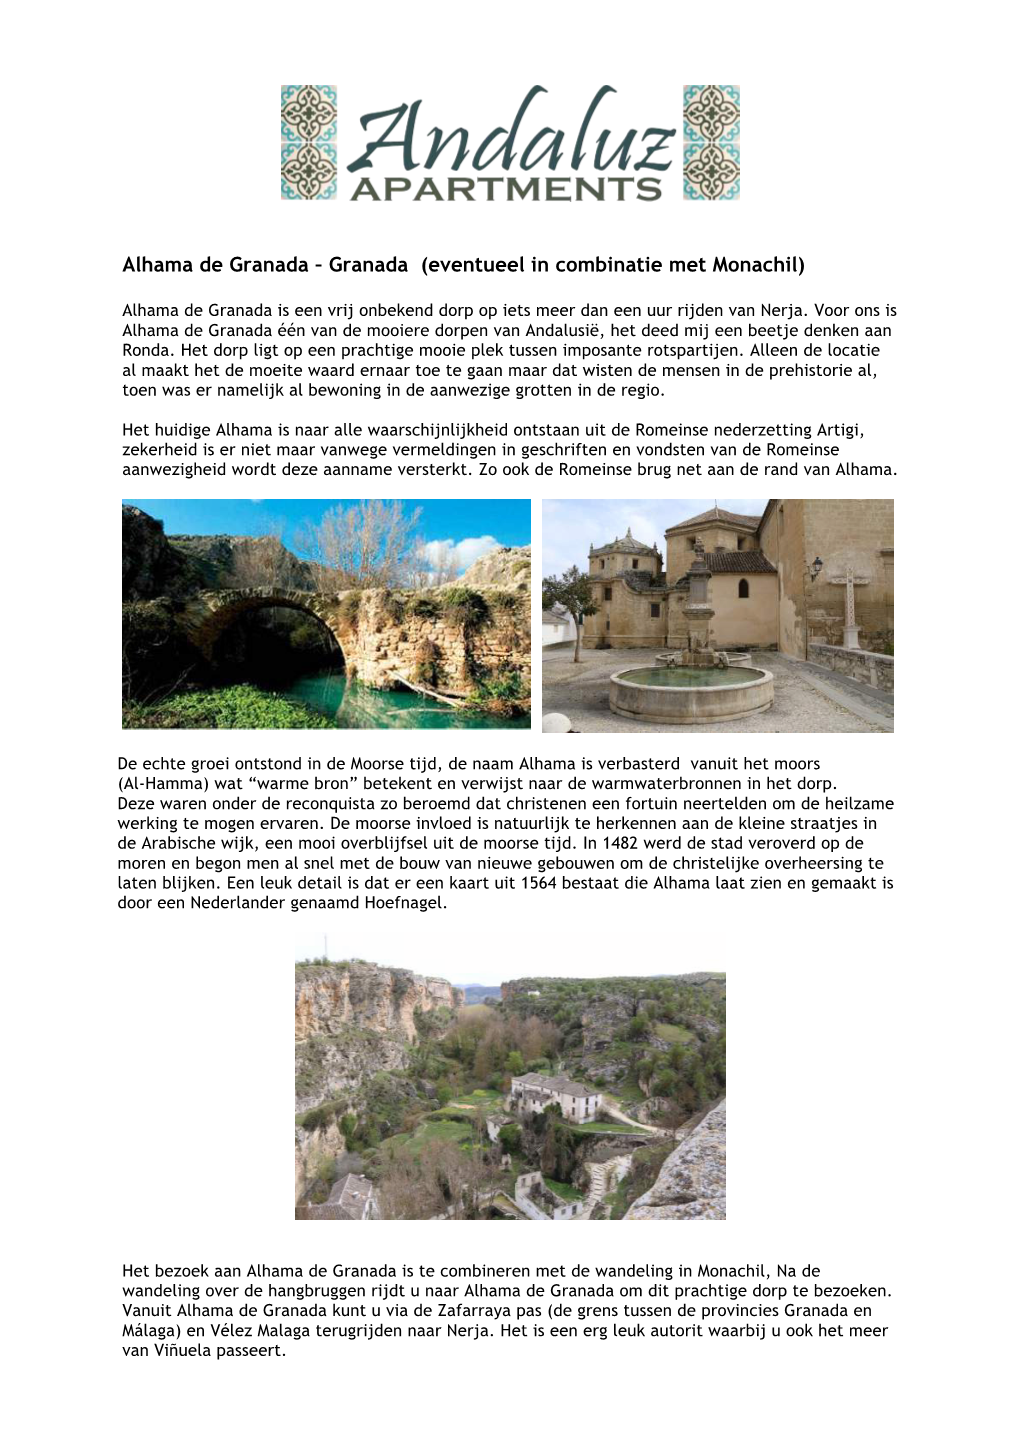 Alhama De Granada – Granada (Eventueel in Combinatie Met Monachil)